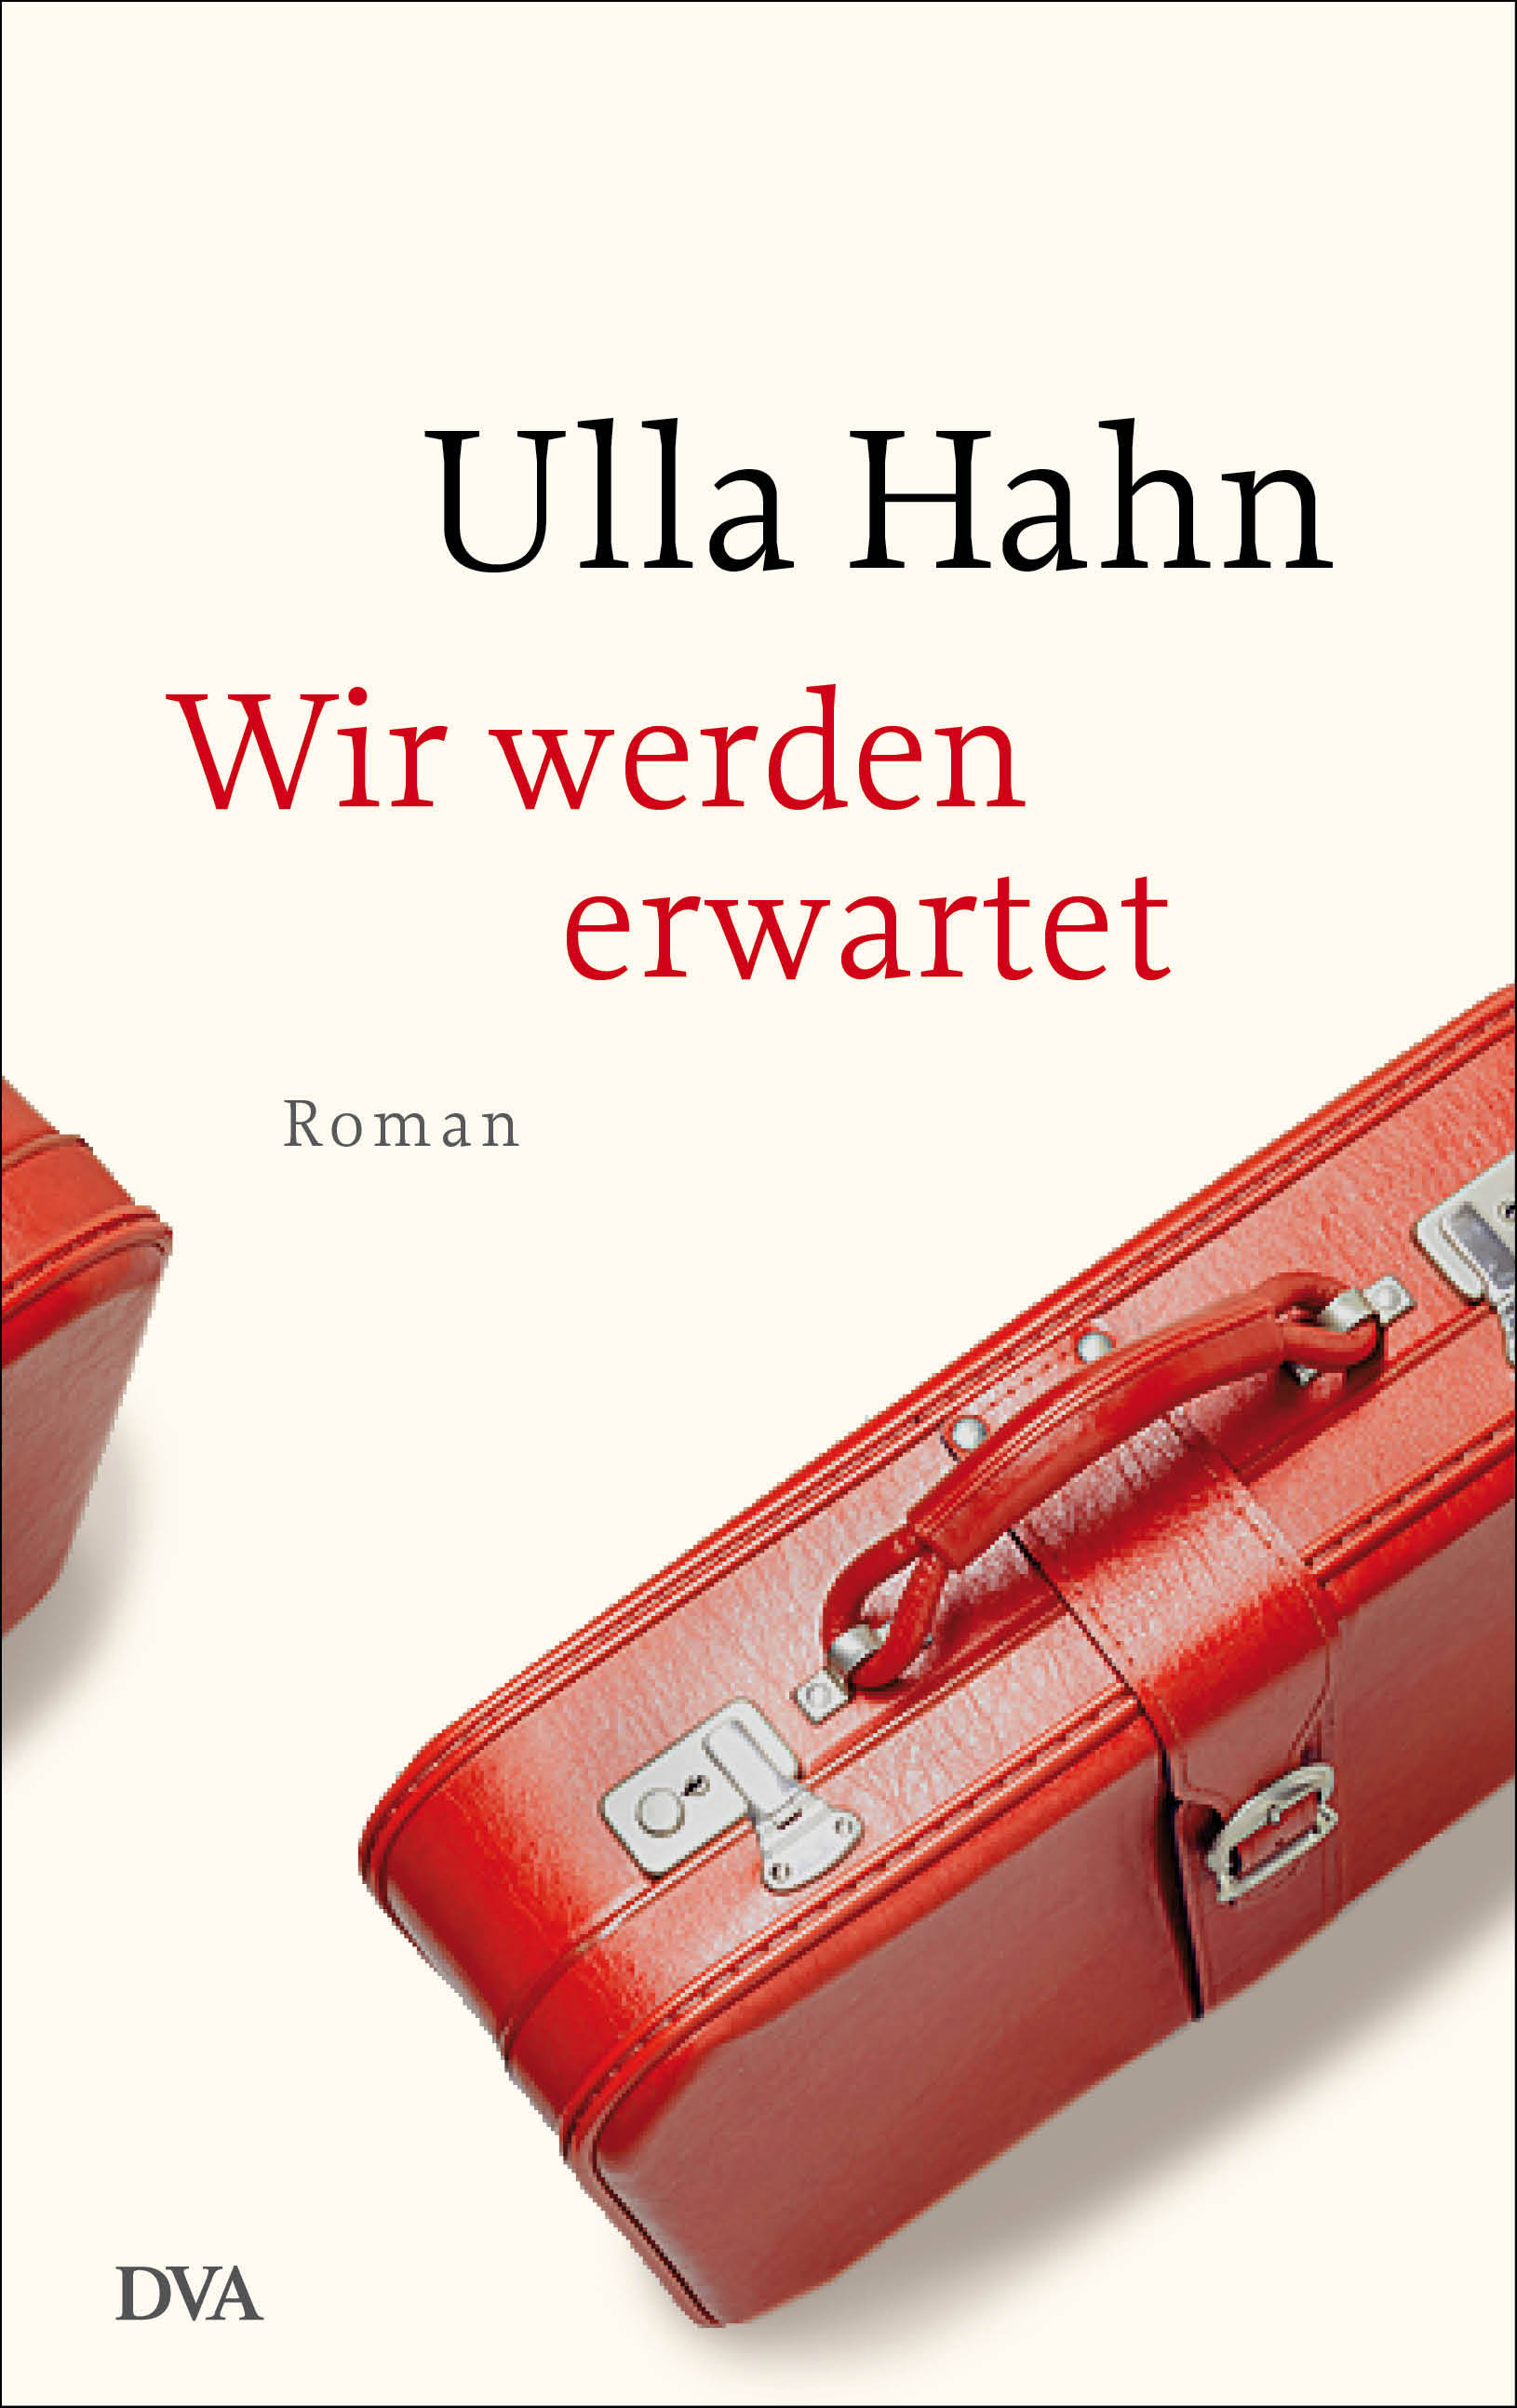 Buchcover: Ulla Hahn: Wir werden erwartet